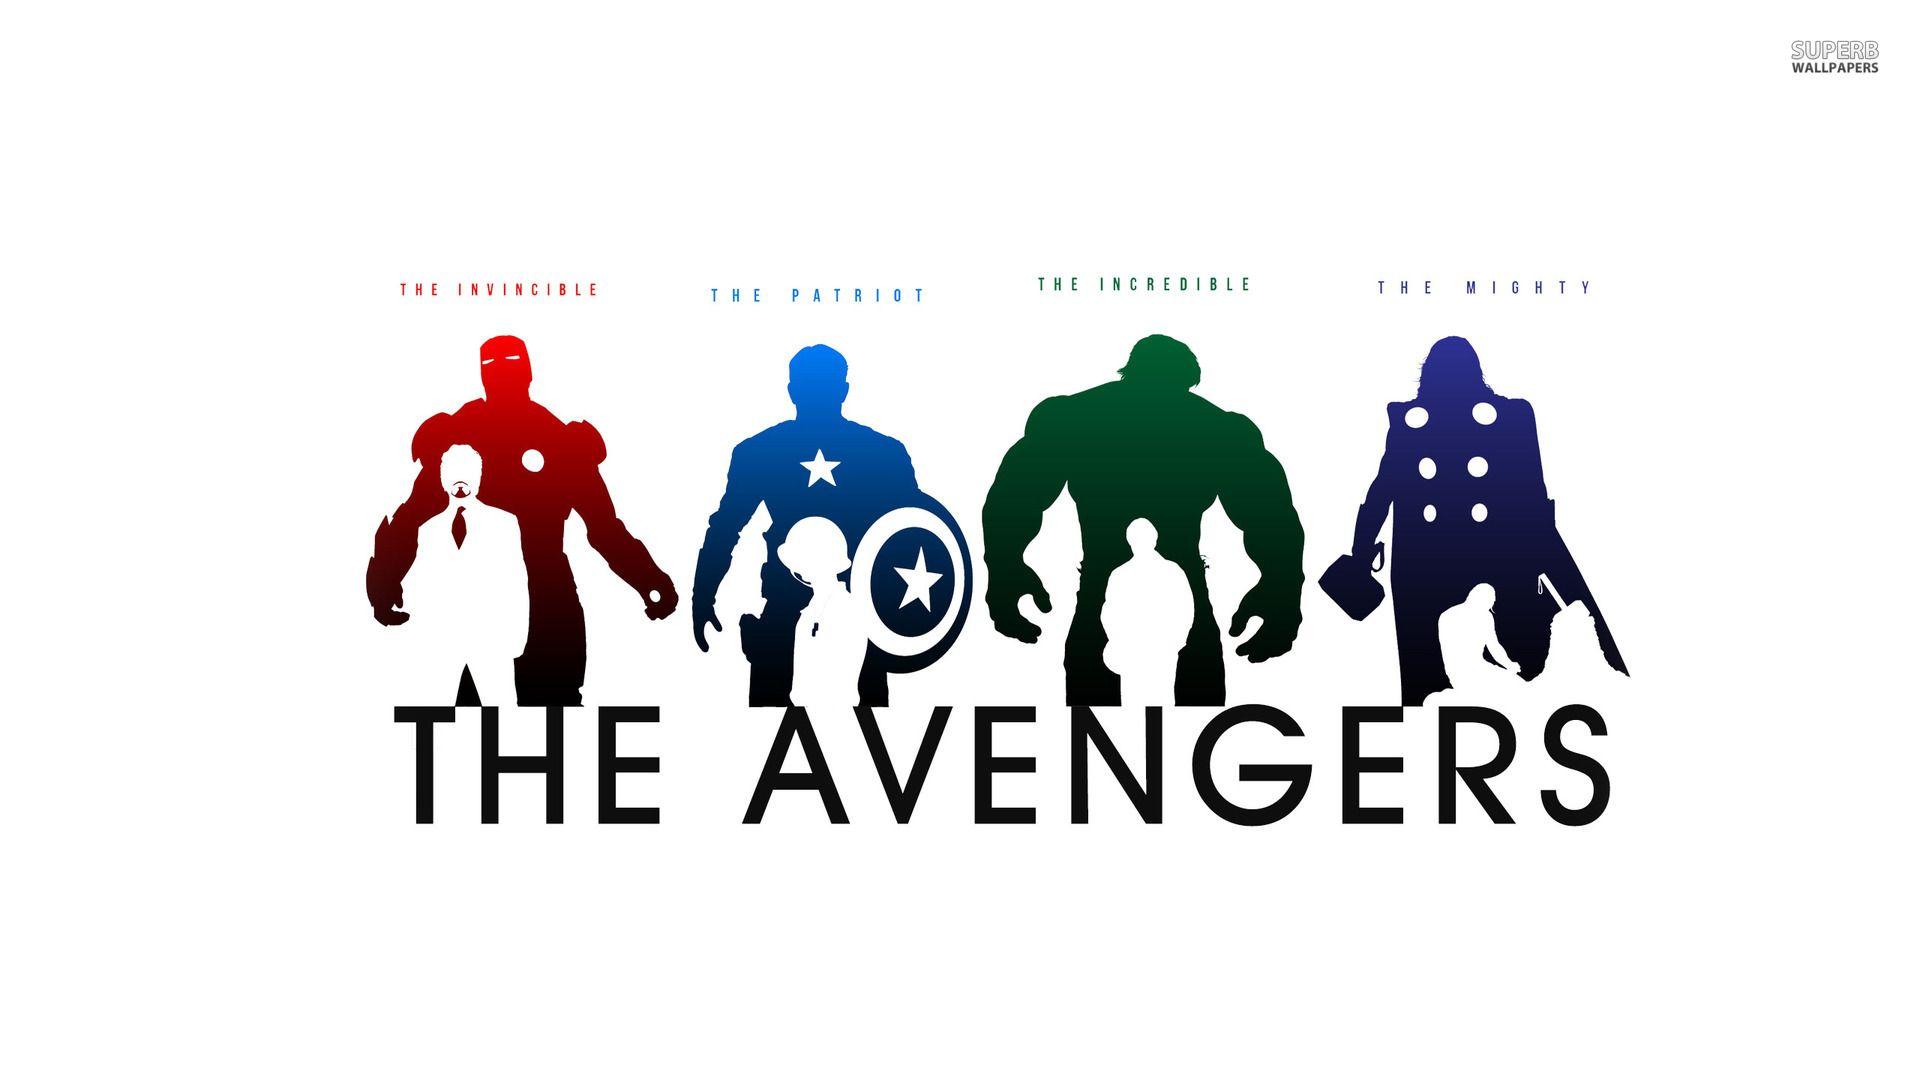 The Avengers Wallpaper For Deskx1080 Movie Background